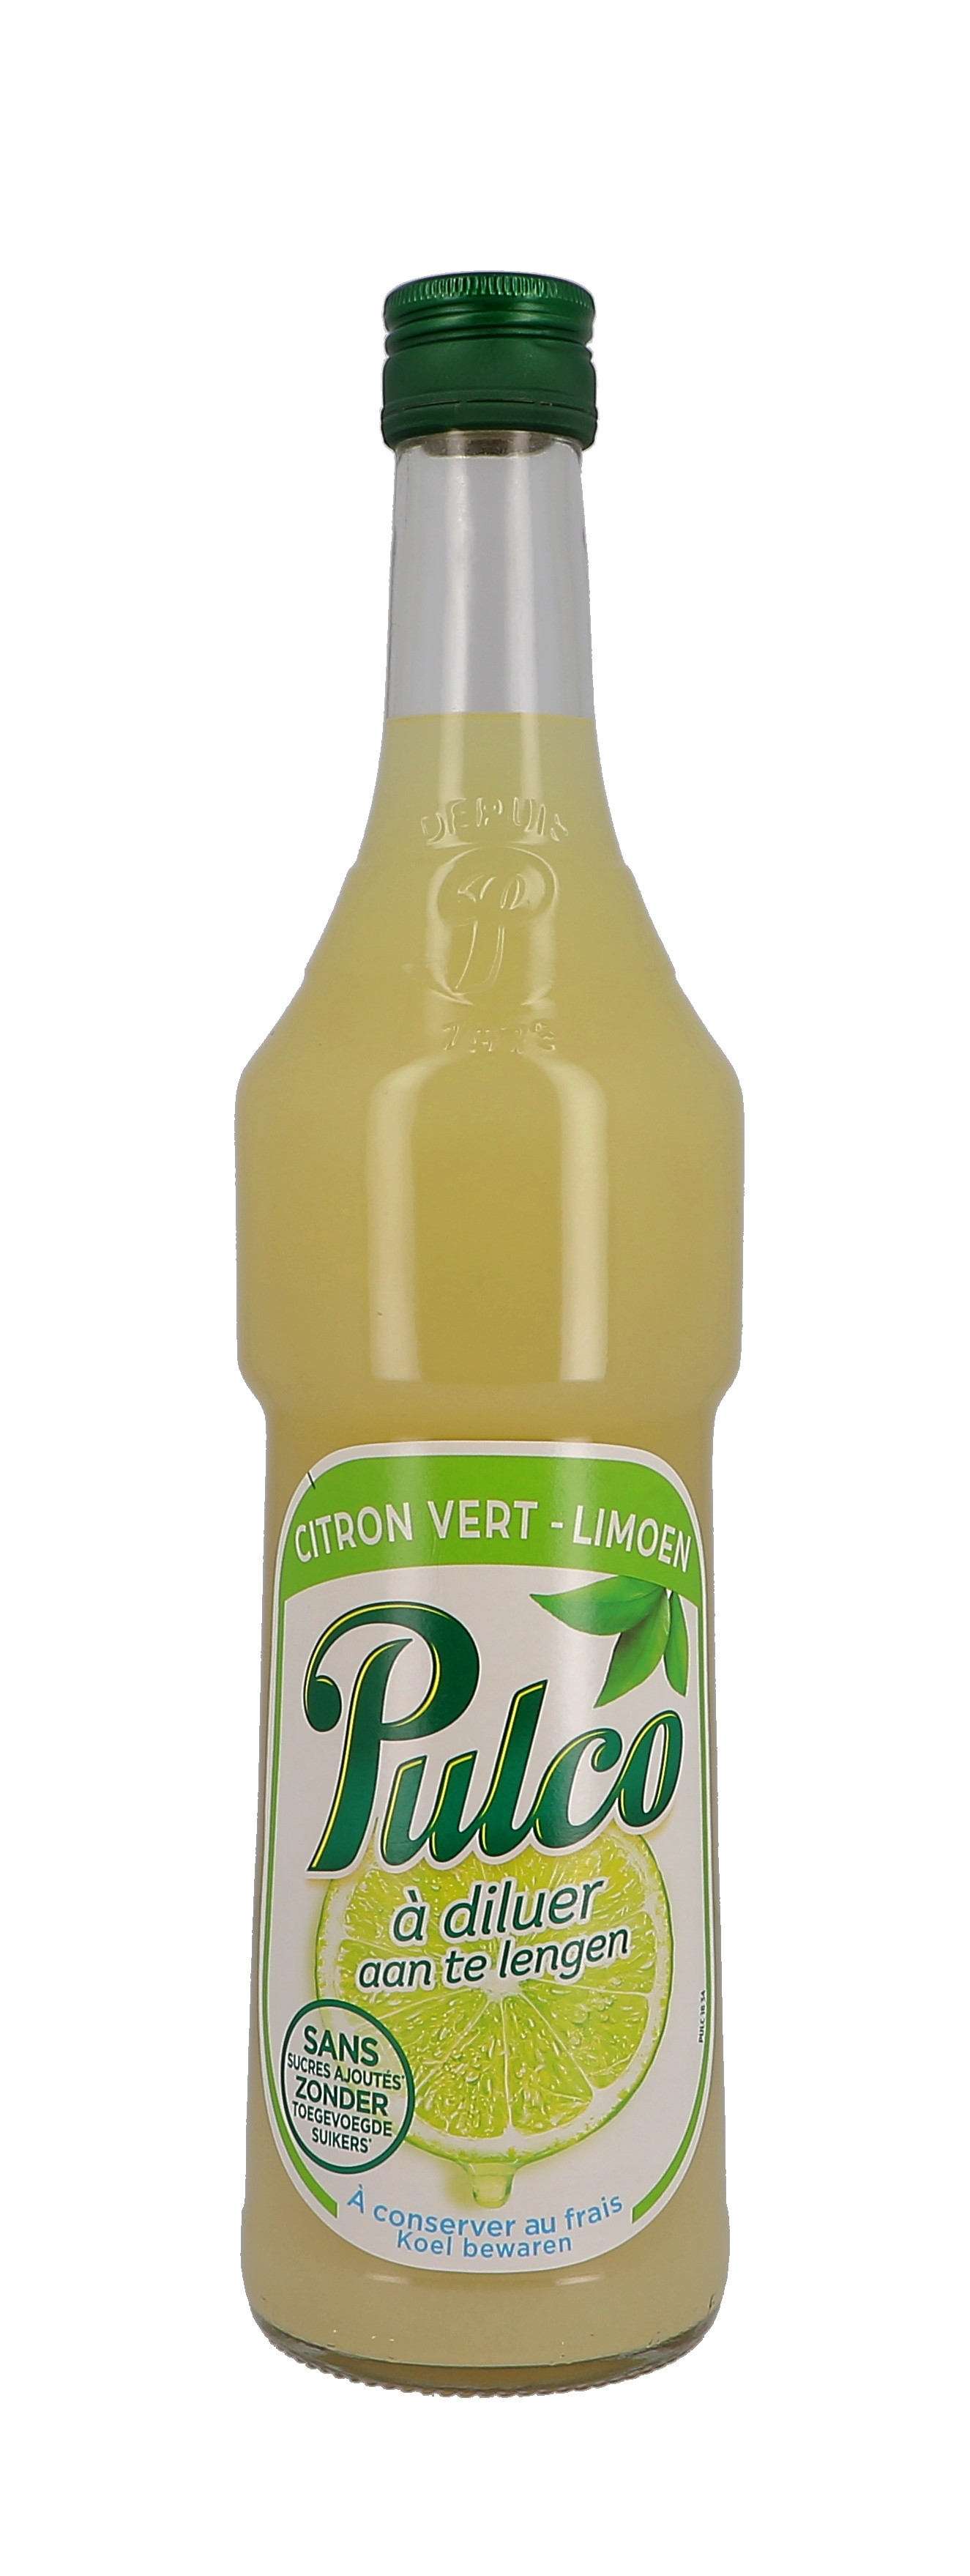 Pulco lemon citron vert 70cl 0%